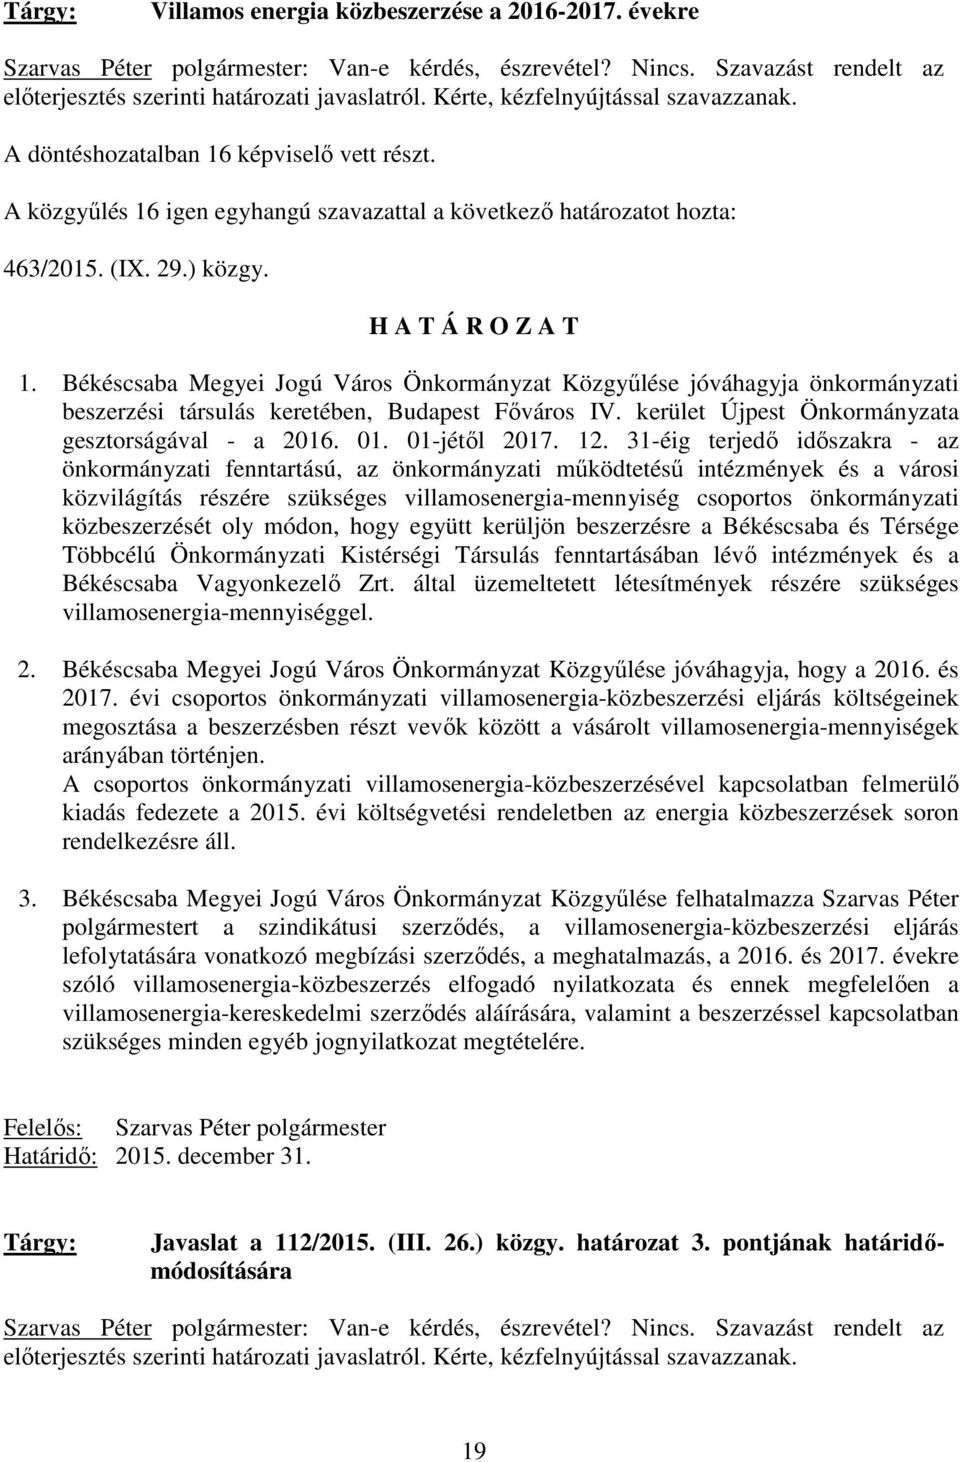 Békéscsaba Megyei Jogú Város Önkormányzat Közgyőlése jóváhagyja önkormányzati beszerzési társulás keretében, Budapest Fıváros IV. kerület Újpest Önkormányzata gesztorságával - a 2016. 01.